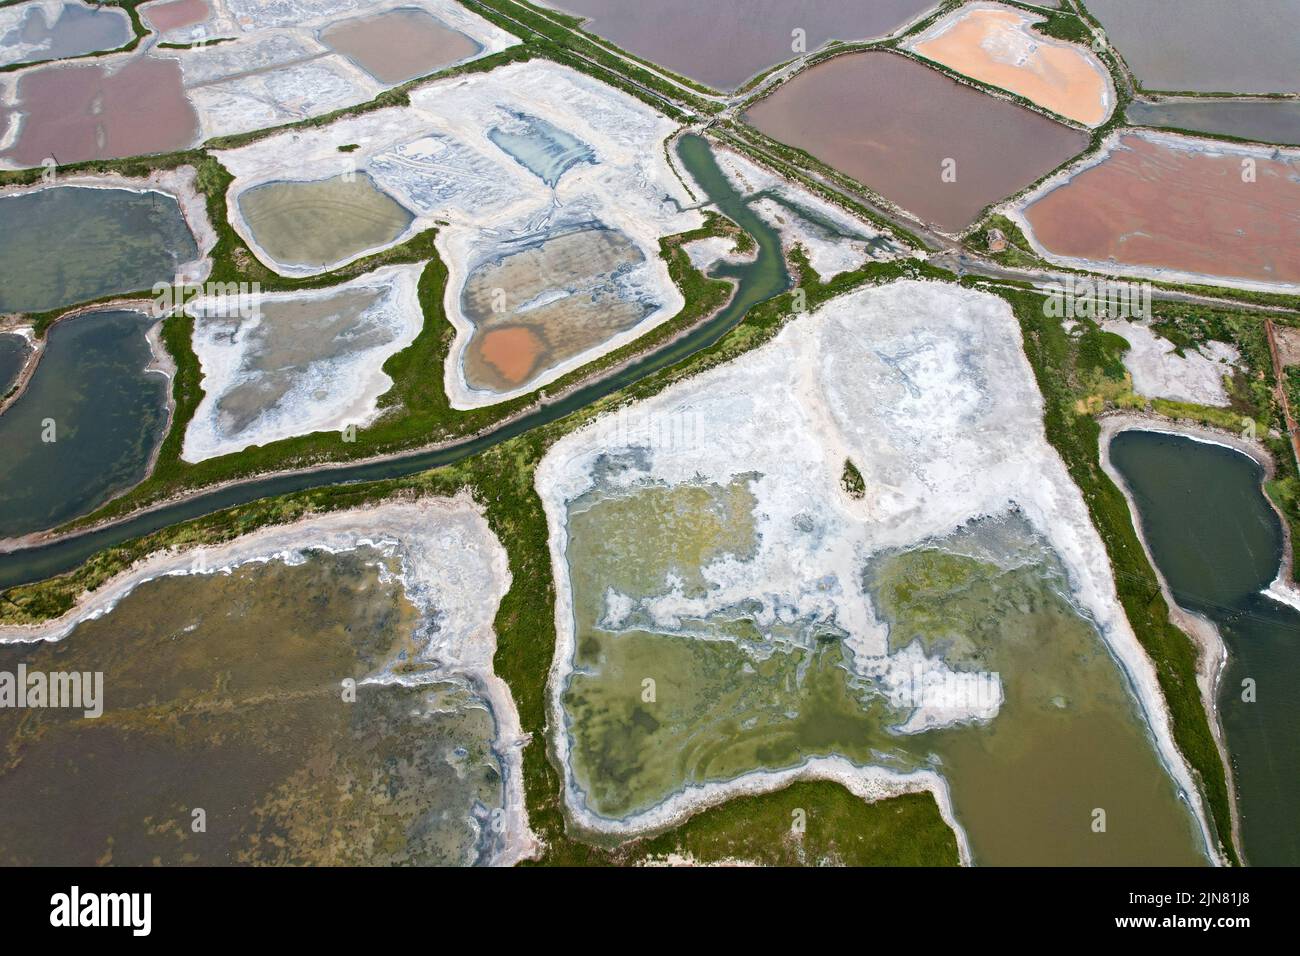 YUNCHENG, CHINA - 9. AUGUST 2022 - der tausendjährige Salzsee präsentiert eine natürliche Schönheit verschiedener Formen in Yuncheng, Provinz Shanxi, China, Aug Stockfoto